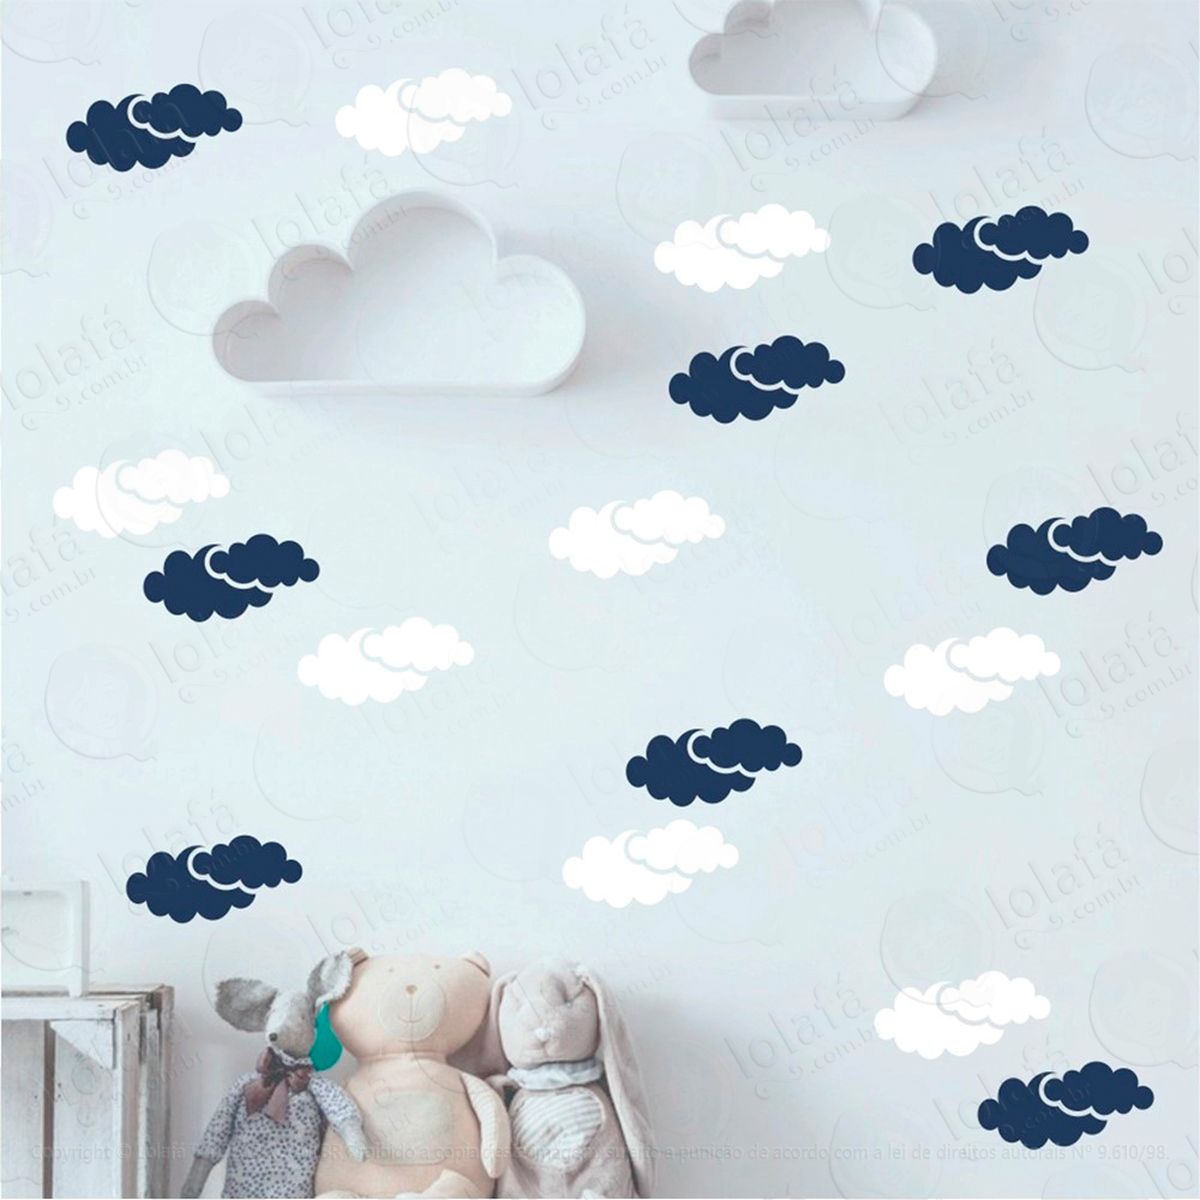 adesivos nuvens 40 peças adesivos para quarto de bebê infantil - mod:974